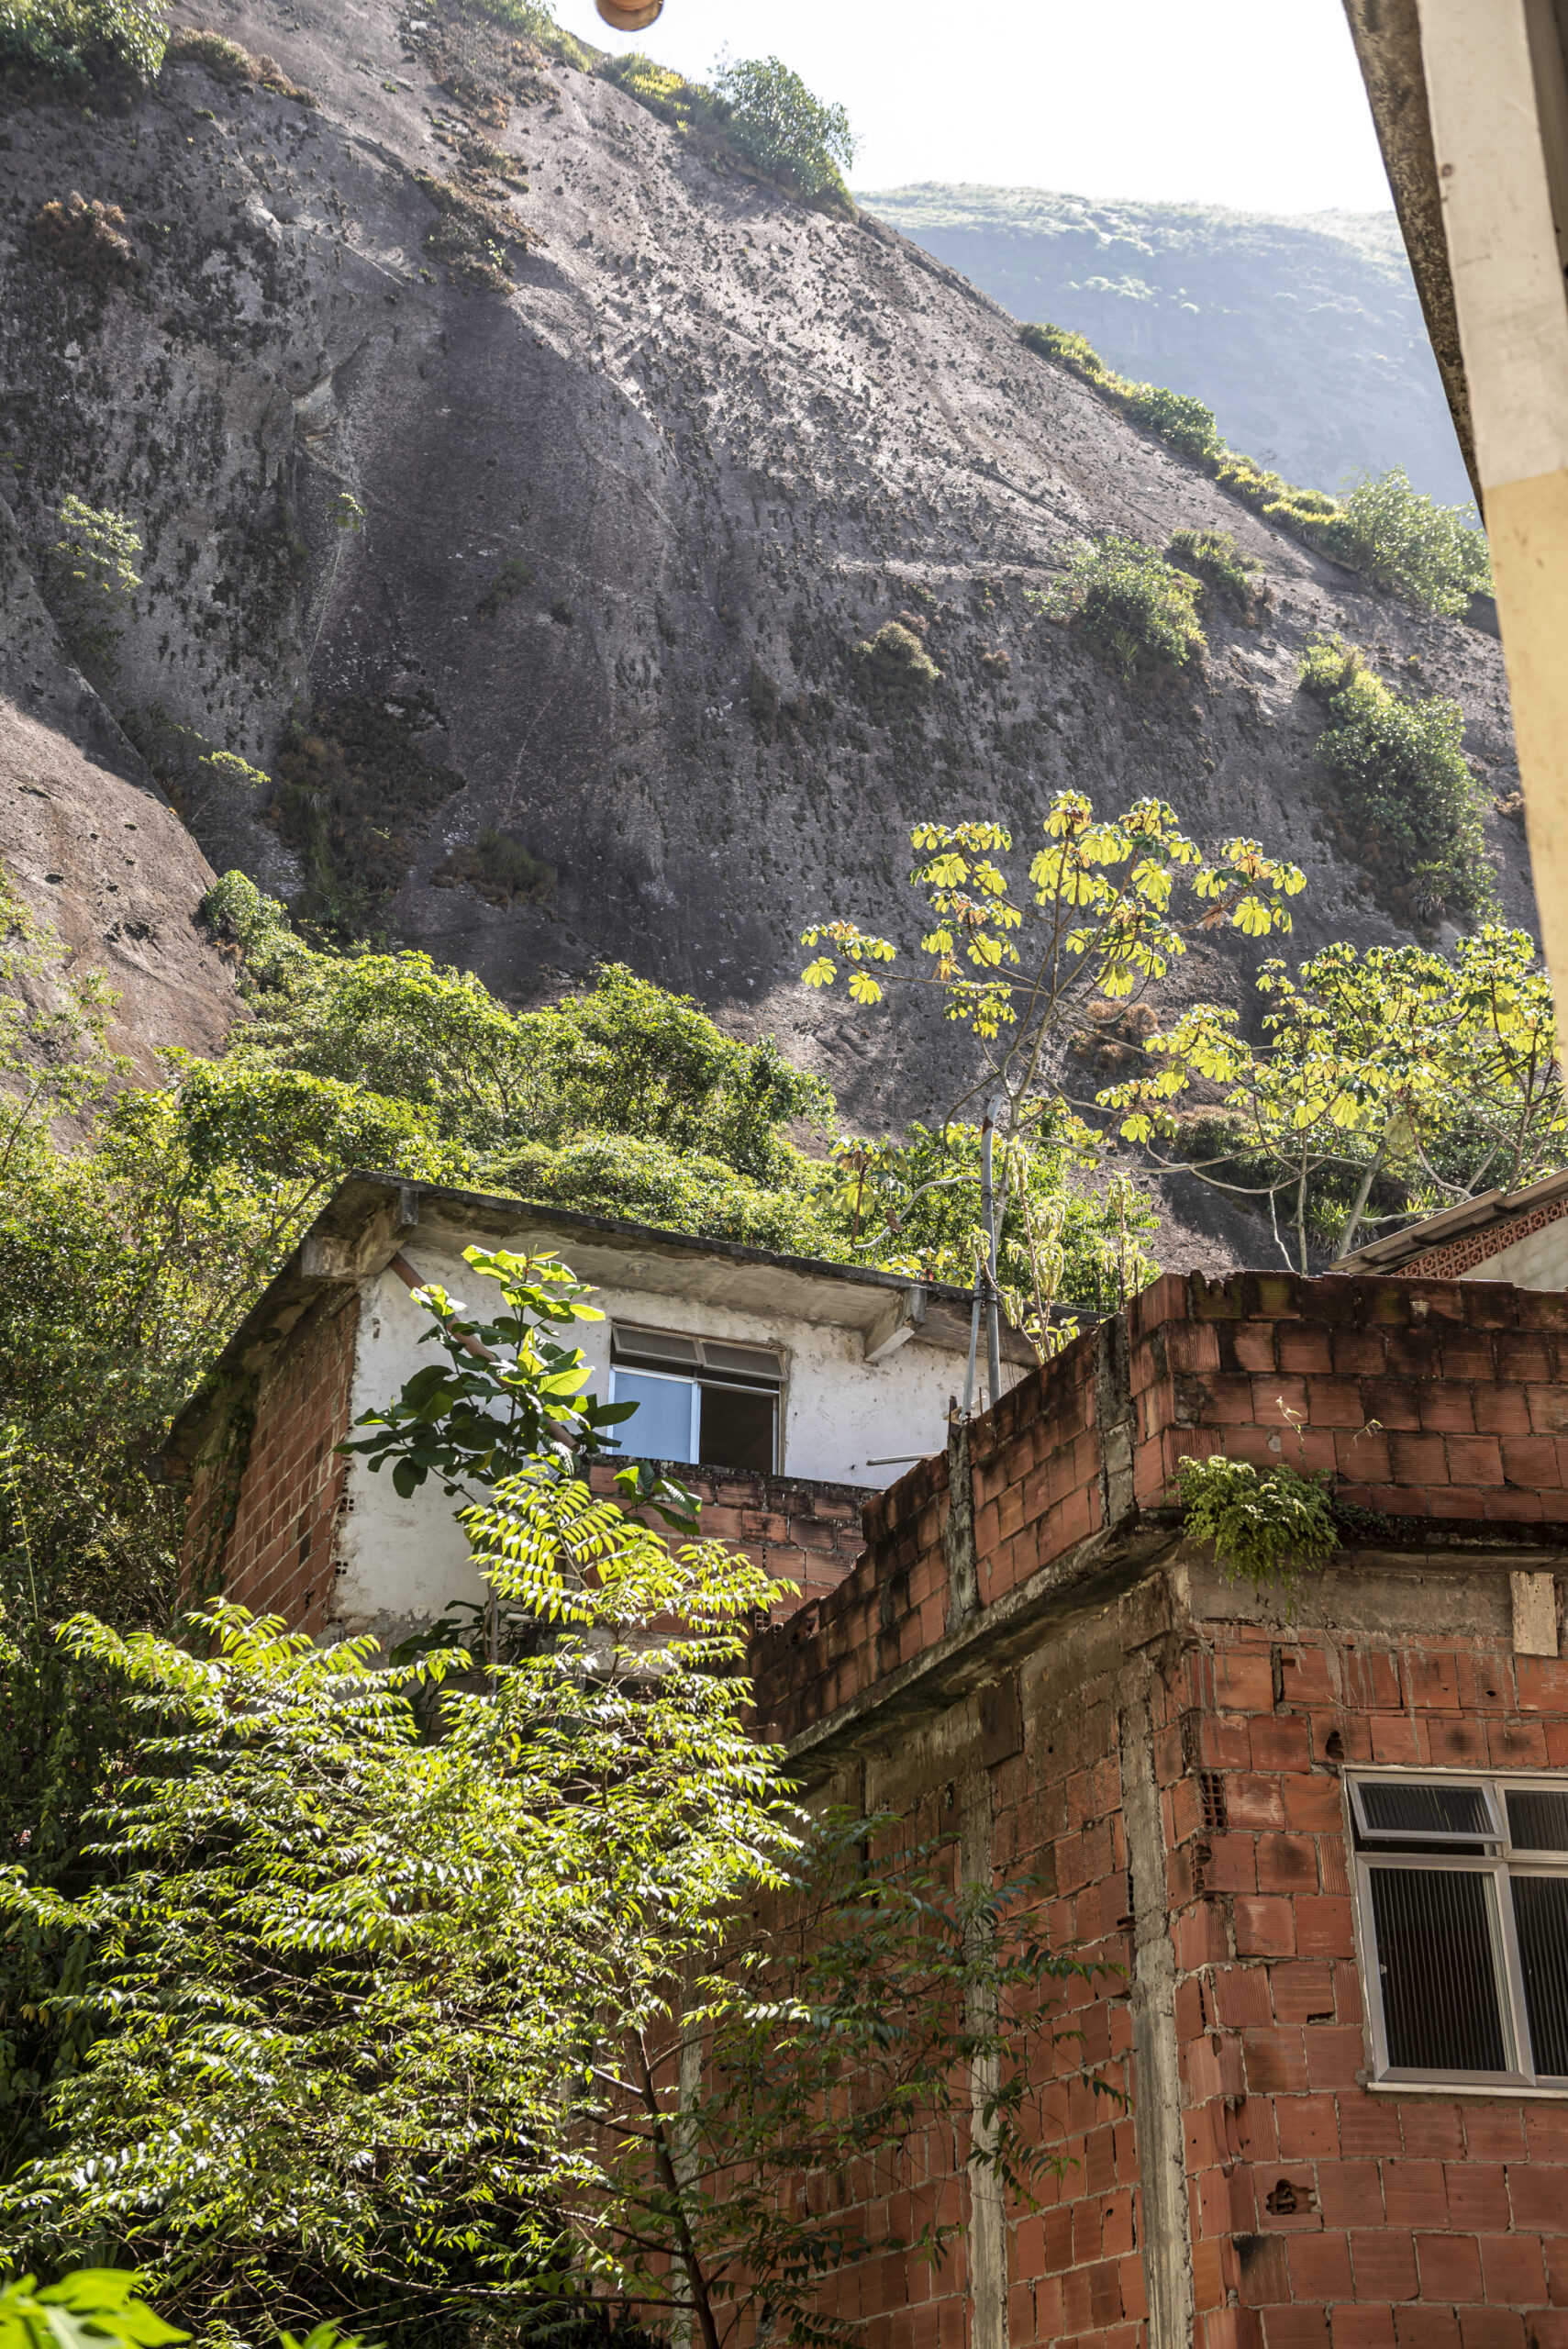 Casas bem próximas à pedra na Jaqueira, ameaçadas por rolamentos de pedra. Foto: Igor Albuquerque